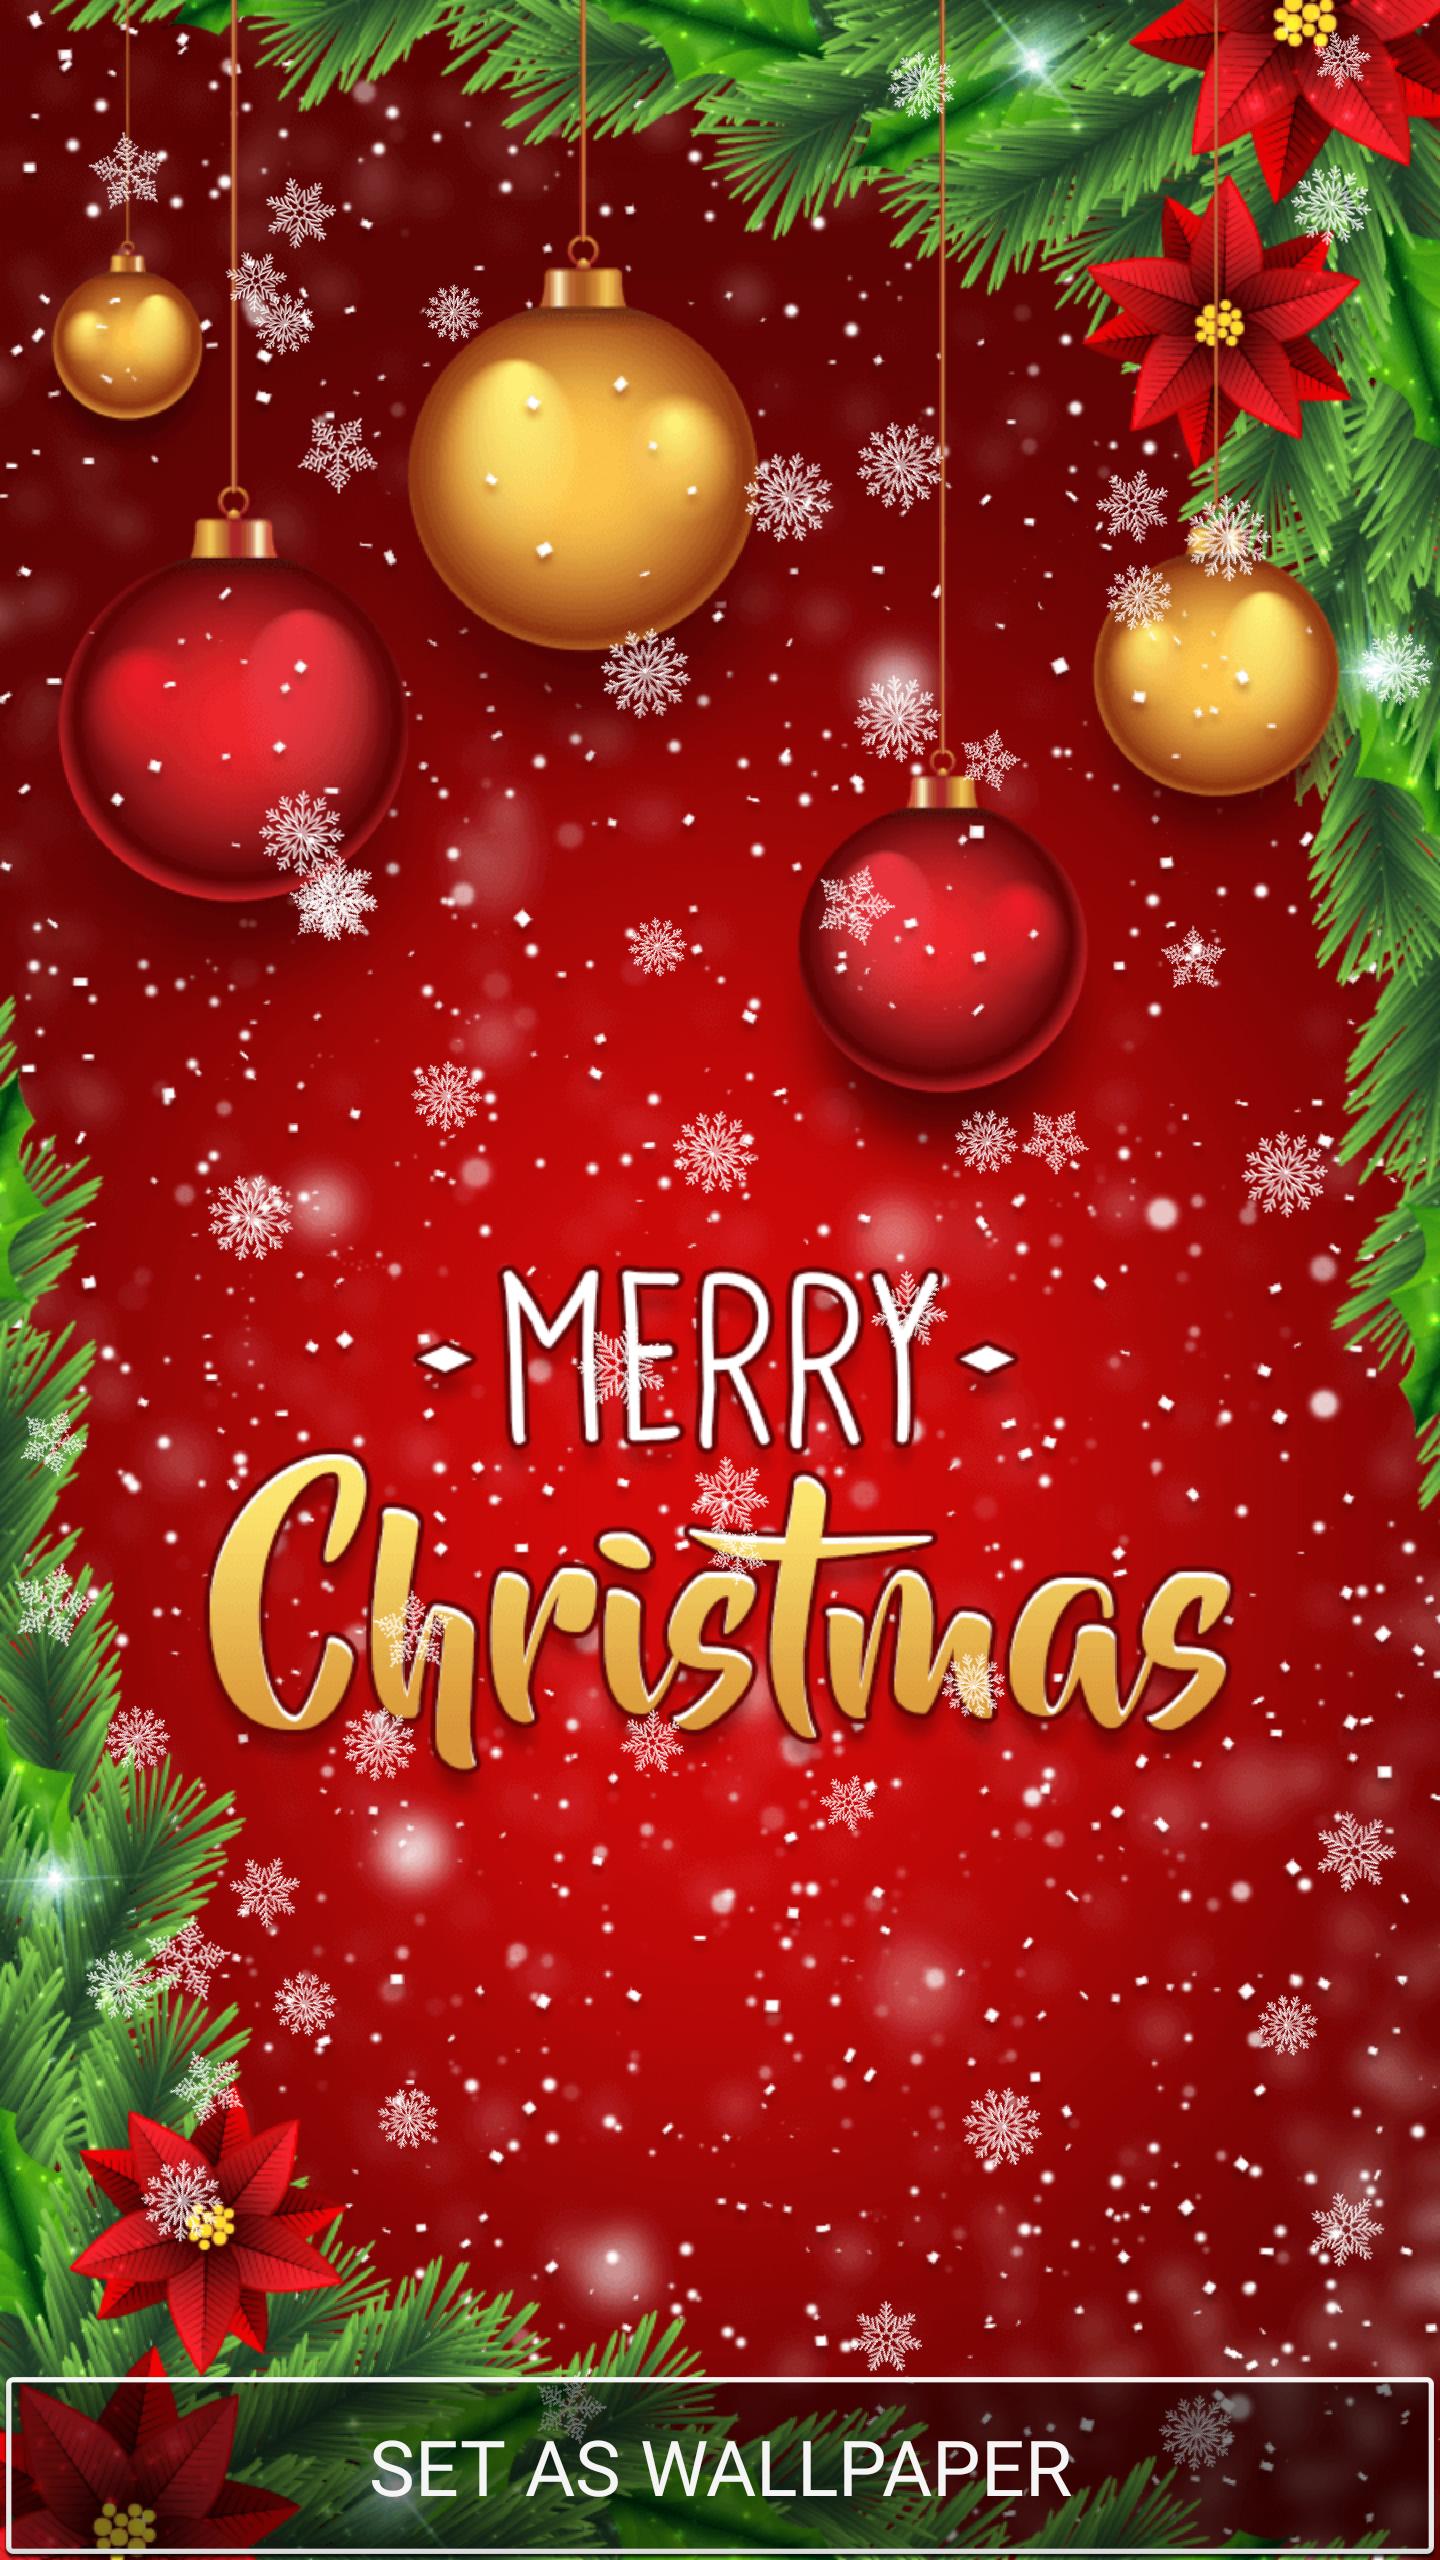 Sfondi Natalizi Cellulare.Sfondi Animati Natale Gratis For Android Apk Download